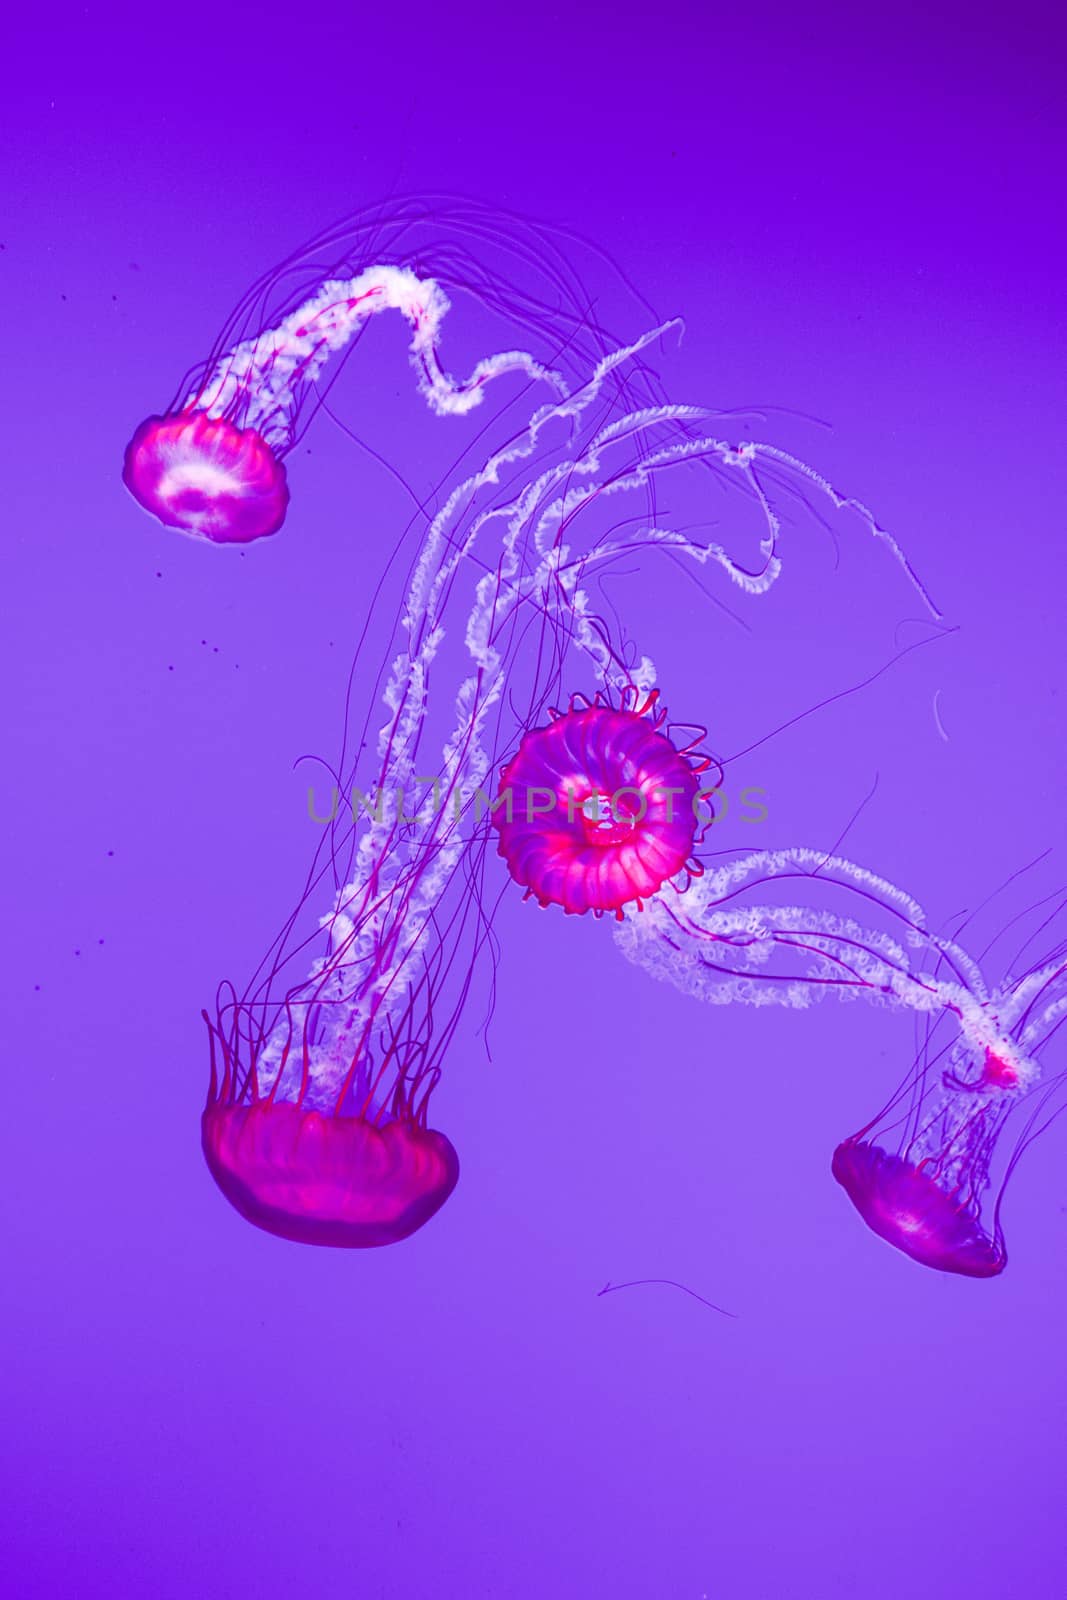 Amazing four jellies by teo